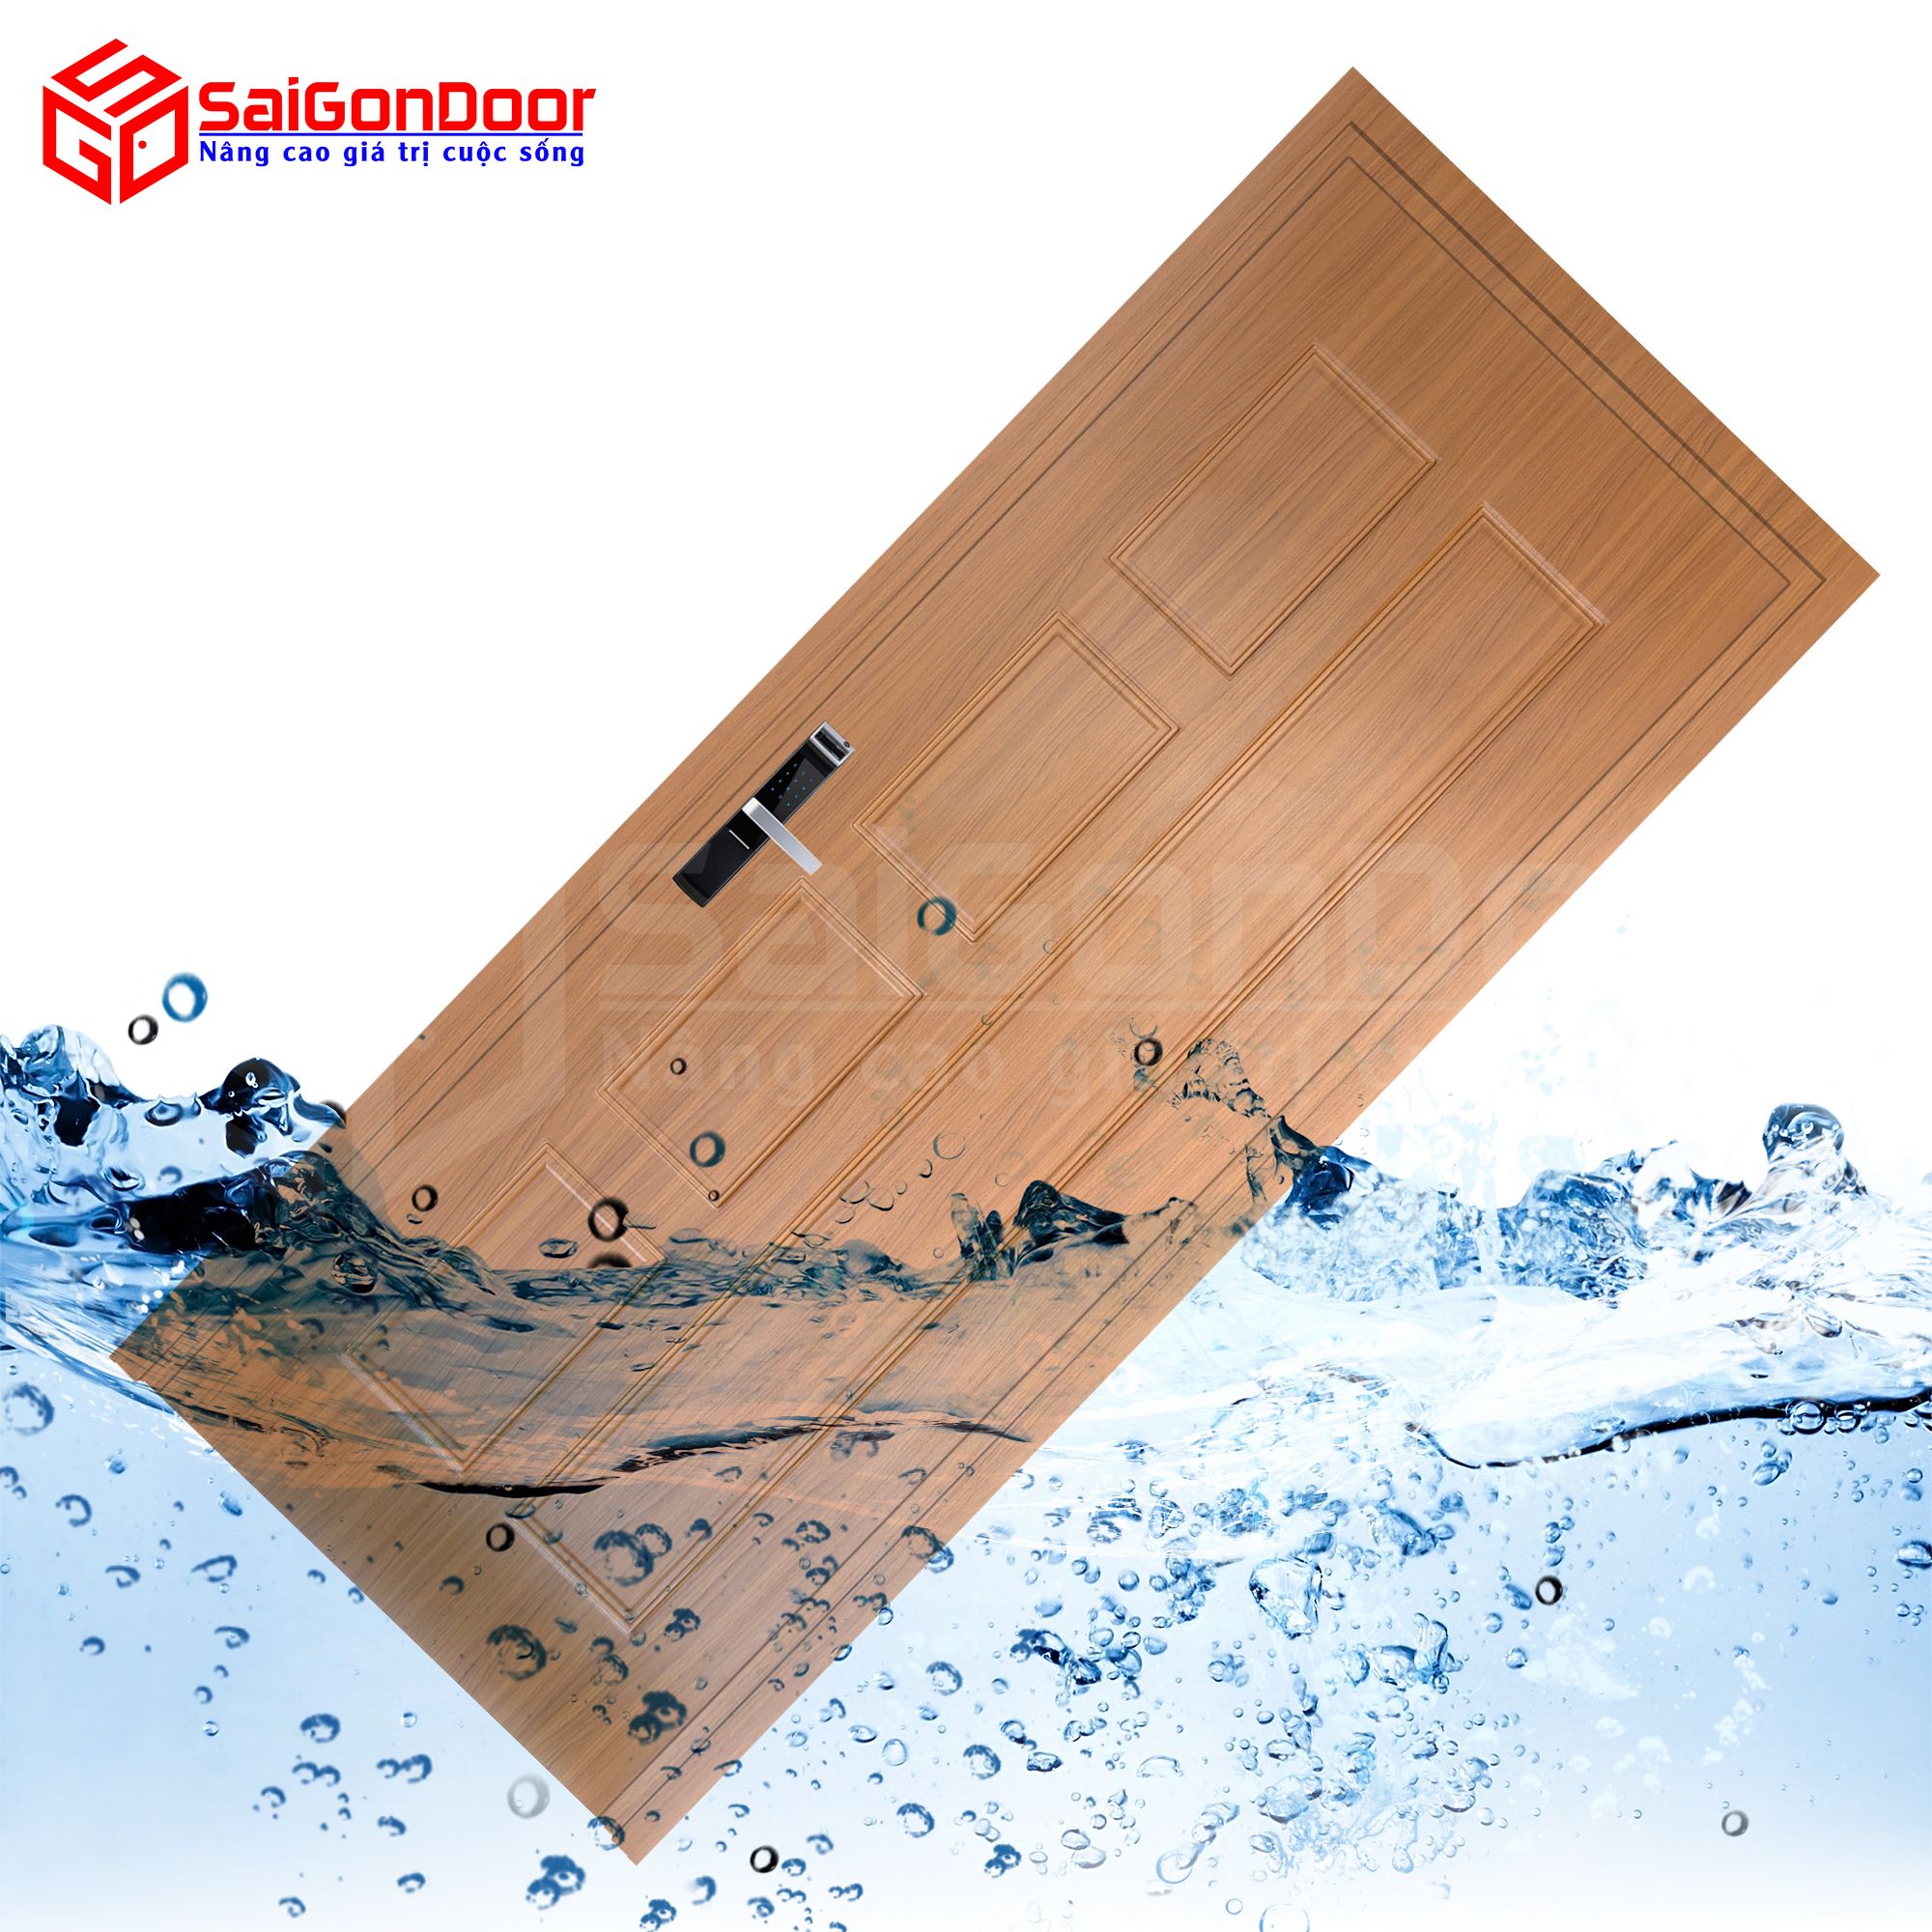 Cửa nhựa gỗ Composite với khả năng chống nước tuyệt đối